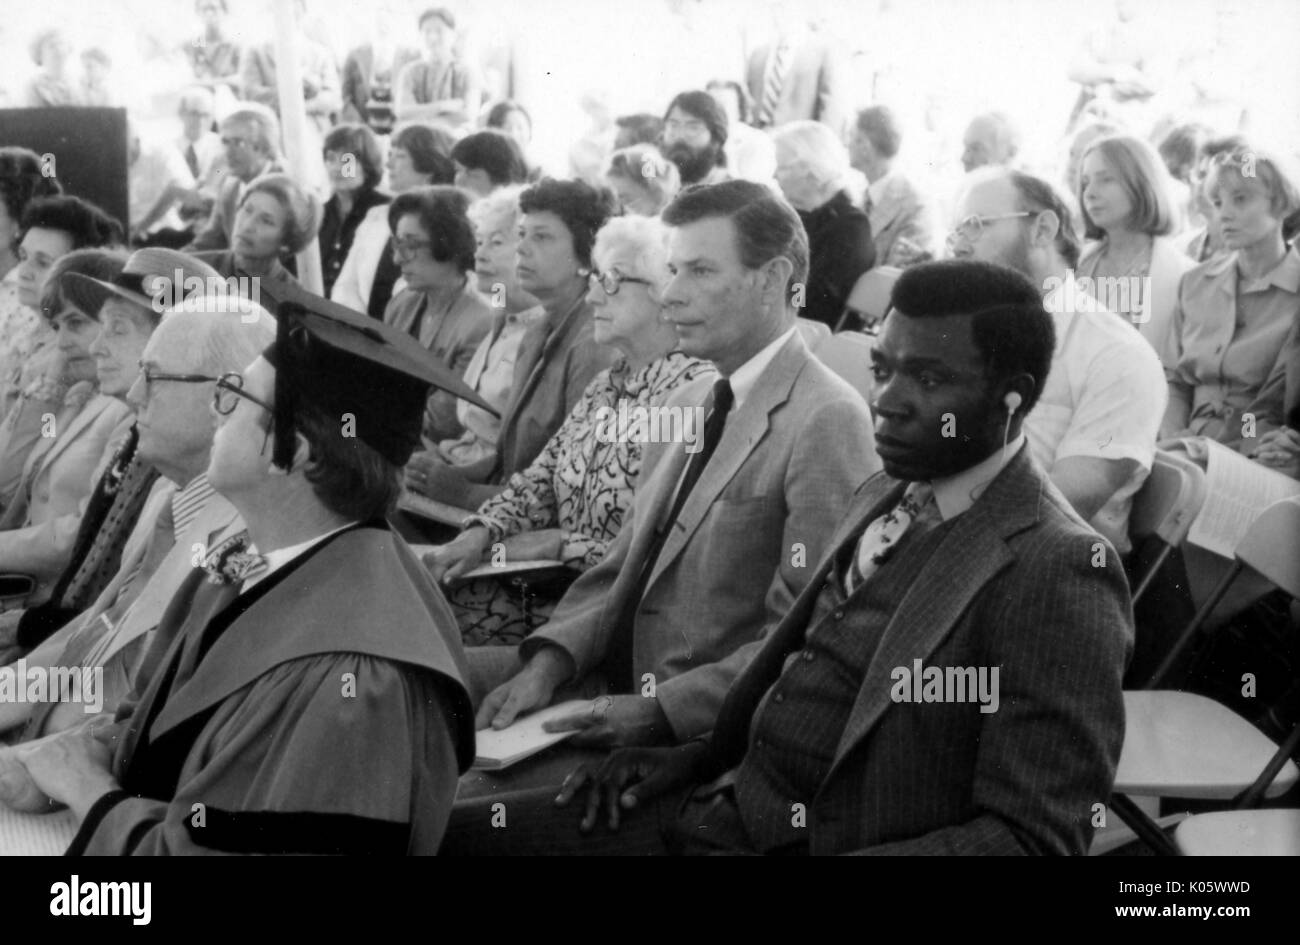 Portrait des Publikums an der Johns Hopkins Beginn sitzen, sitzen auf Plastikstühlen, eine afrikanische amerikanische Mann im Anzug im Vordergrund mit einer Hörmuschel in seinem linken Ohr, hinter einem Mitglied der Fakultät mit Kappe und Kleid sitzt, alle mit Blick auf die Anfang Zeremonie, mit ernsten Gesichtsausdruck, 1980. Stockfoto